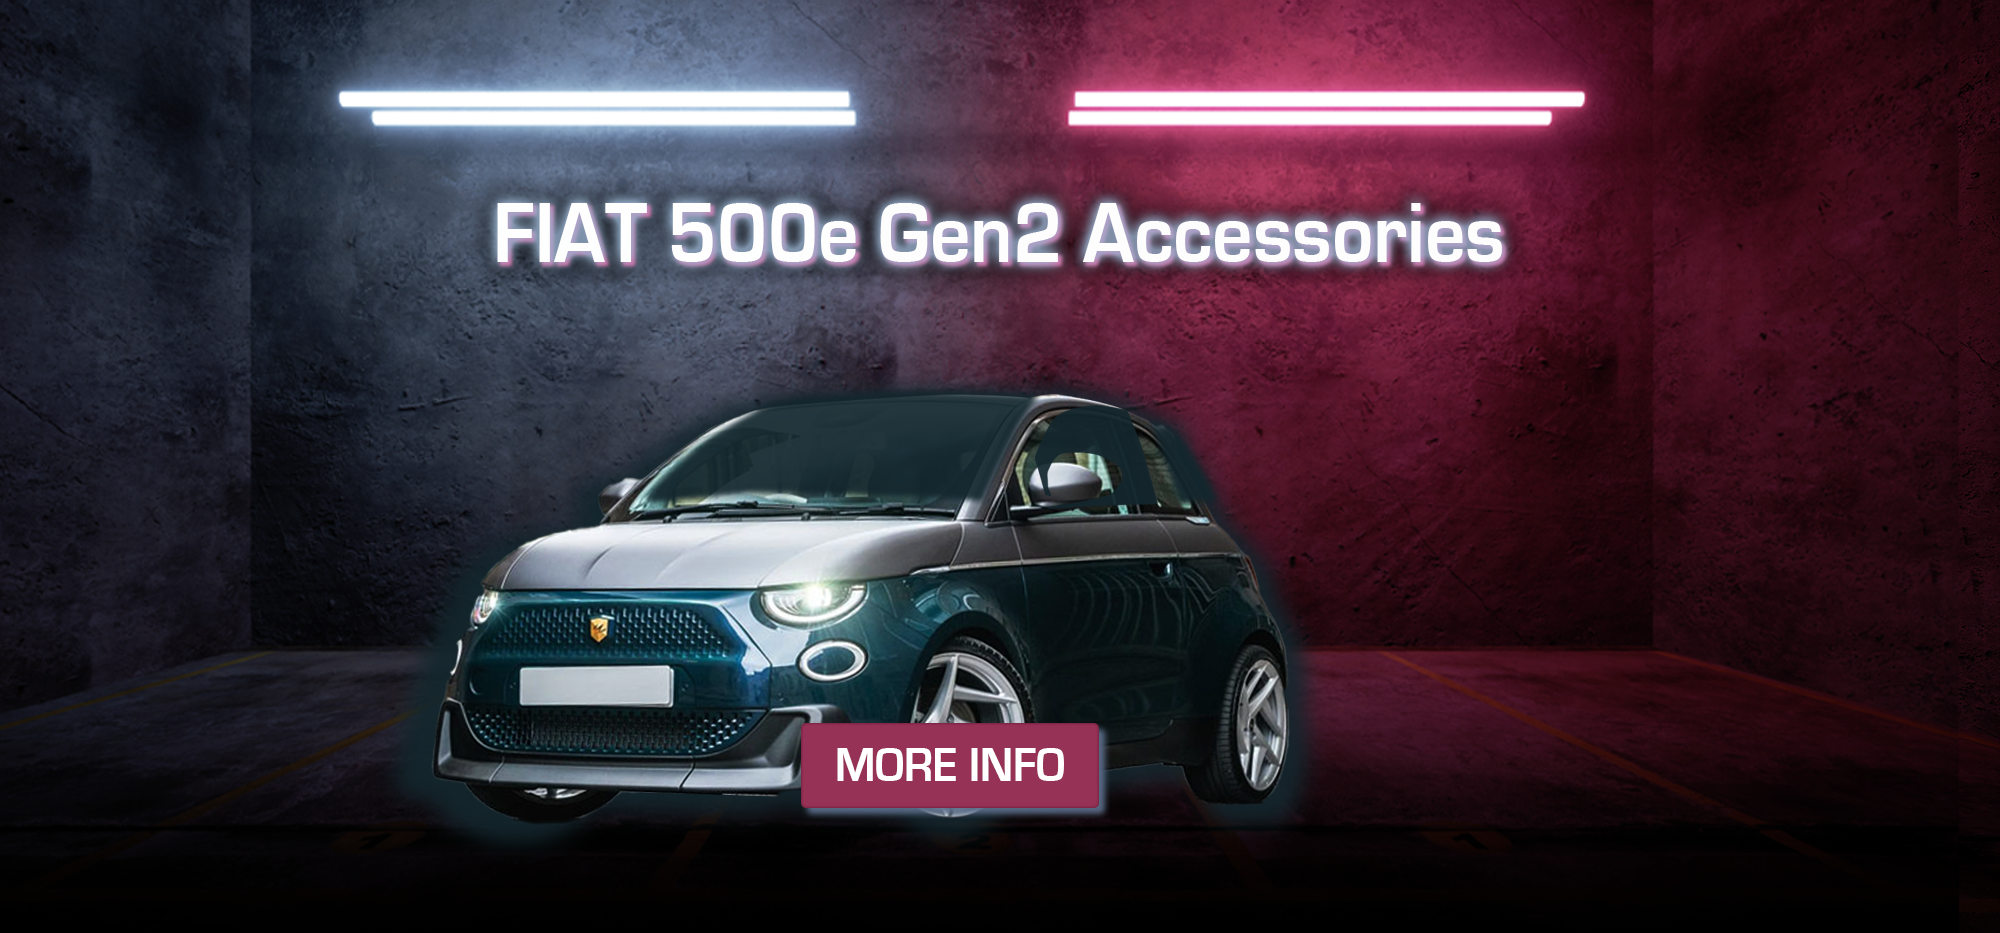 Fiat 500: Tienda on-line accesorios deportivos para coche